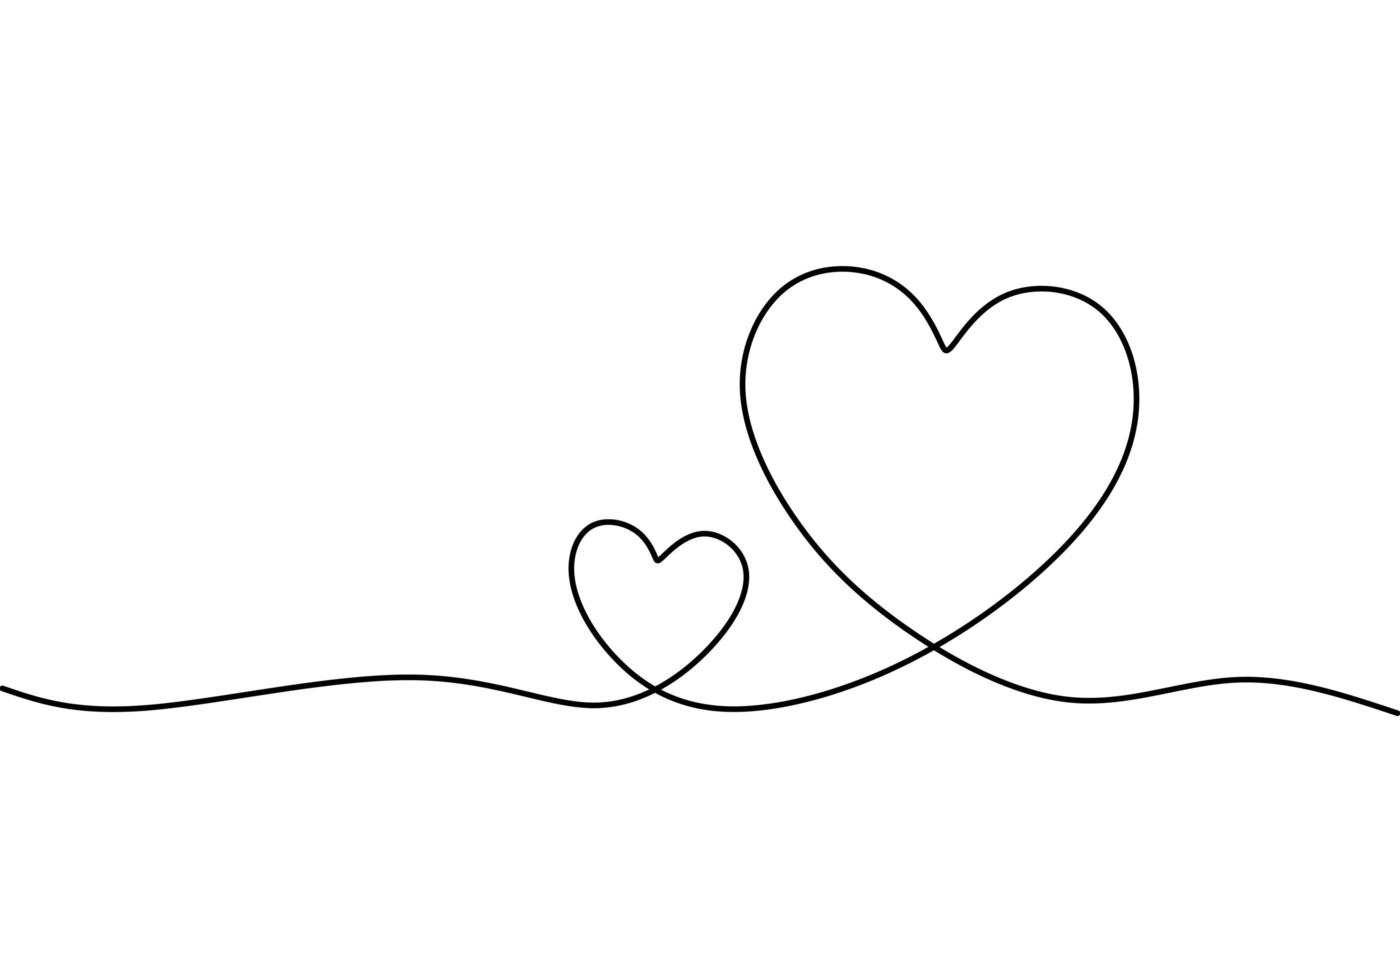 Diseño del día de San Valentín del fondo del corazón, dibujo continuo de una línea. Ilustración de vector de minimalismo con símbolo de amor.